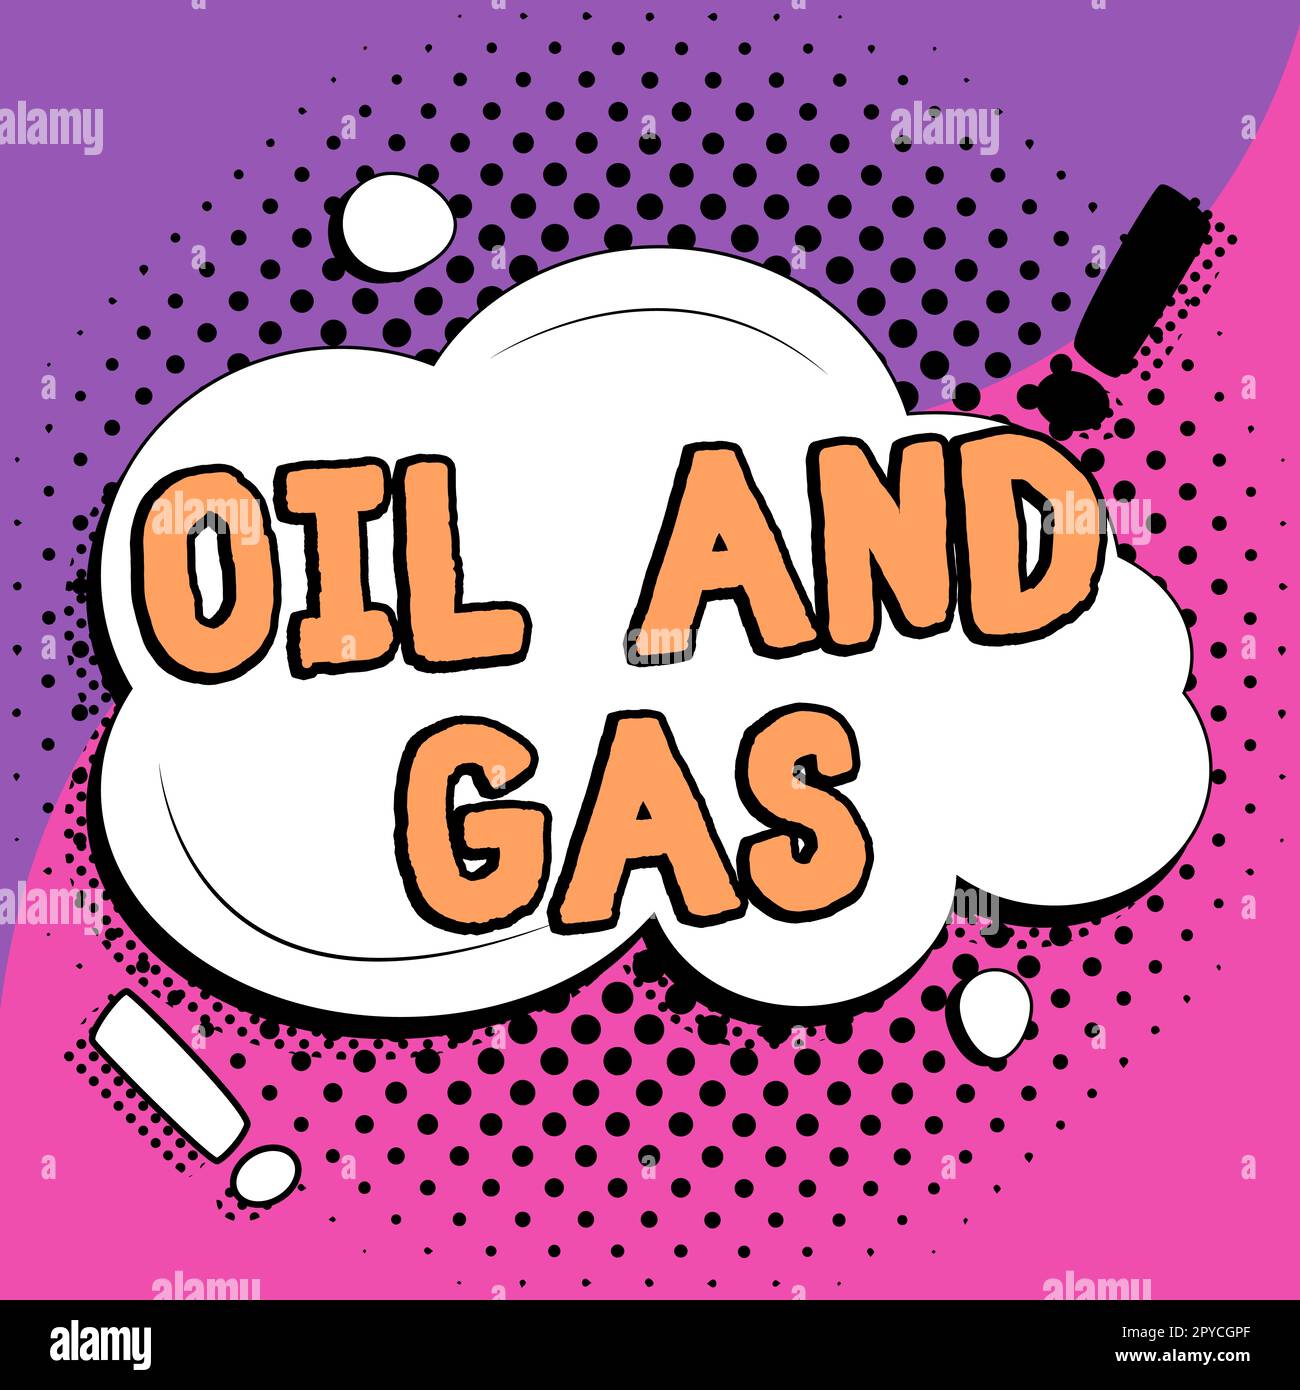 Affichage conceptuel pétrole et gaz. Concept d'affaires exploration extraction raffinage commercialisation des produits pétroliers Banque D'Images